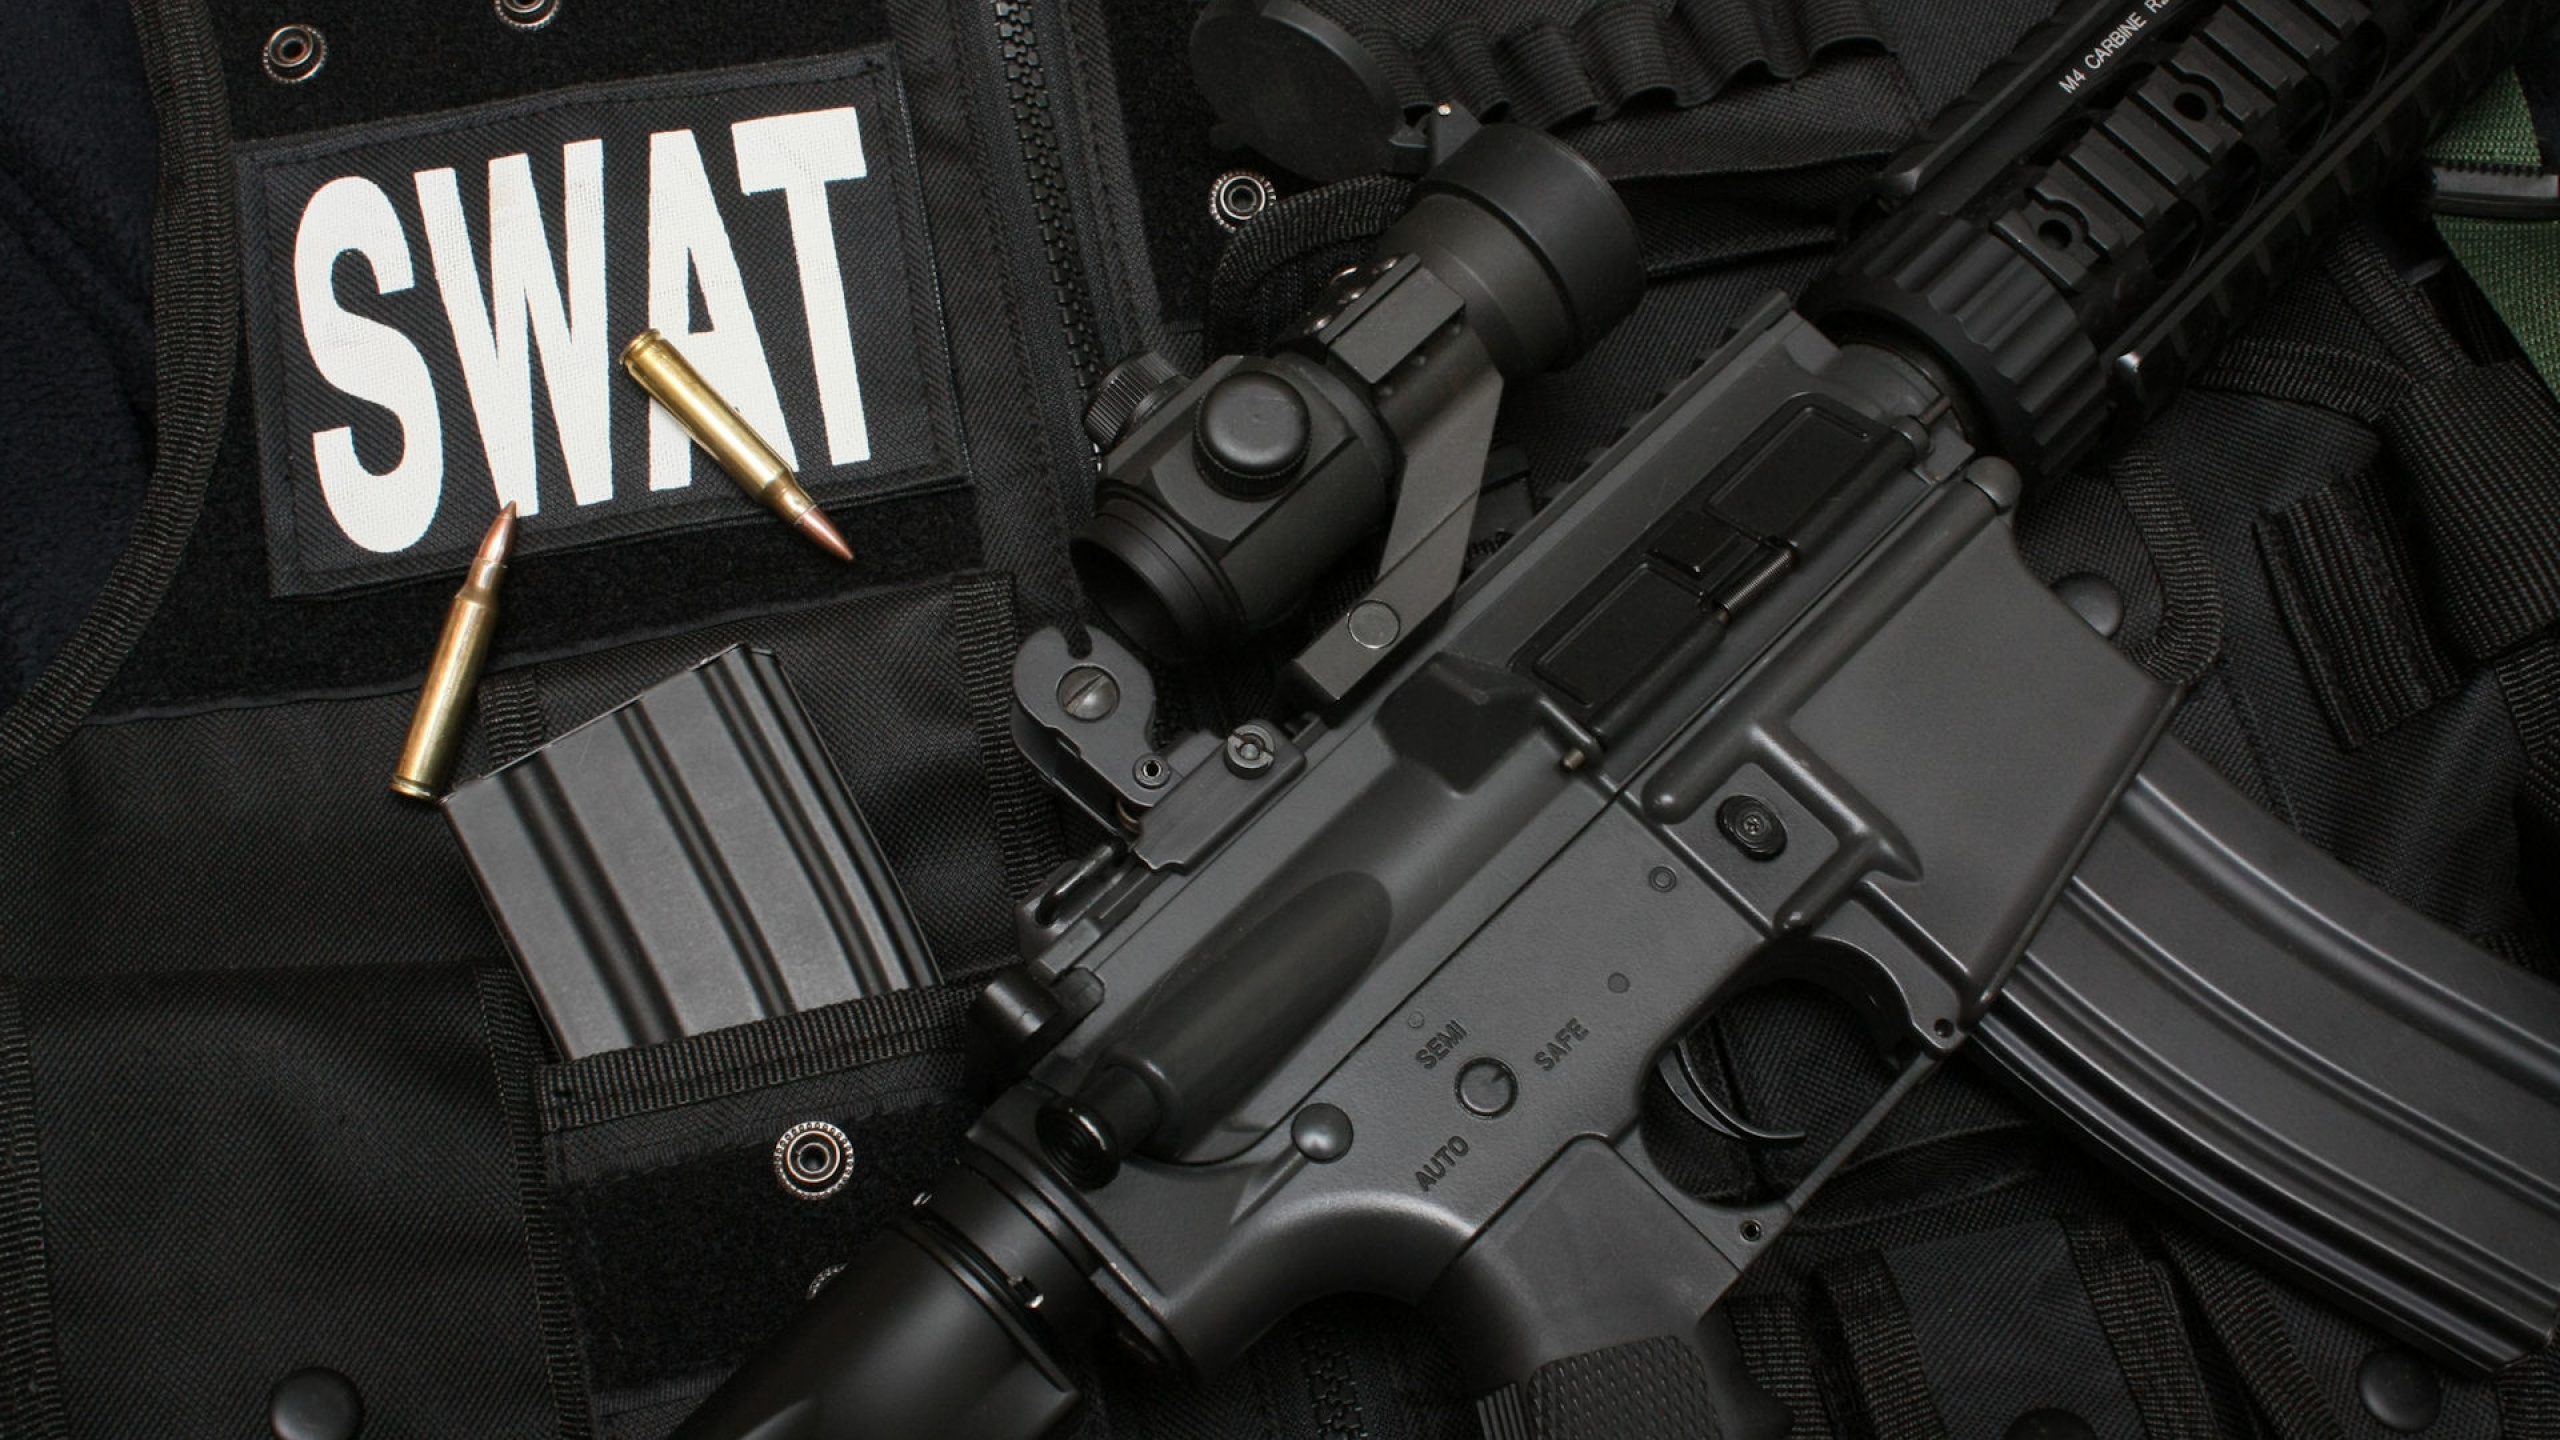 Swat, Feuerwaffe, Trigger, Airsoft, Airsoft Gun. Wallpaper in 2560x1440 Resolution